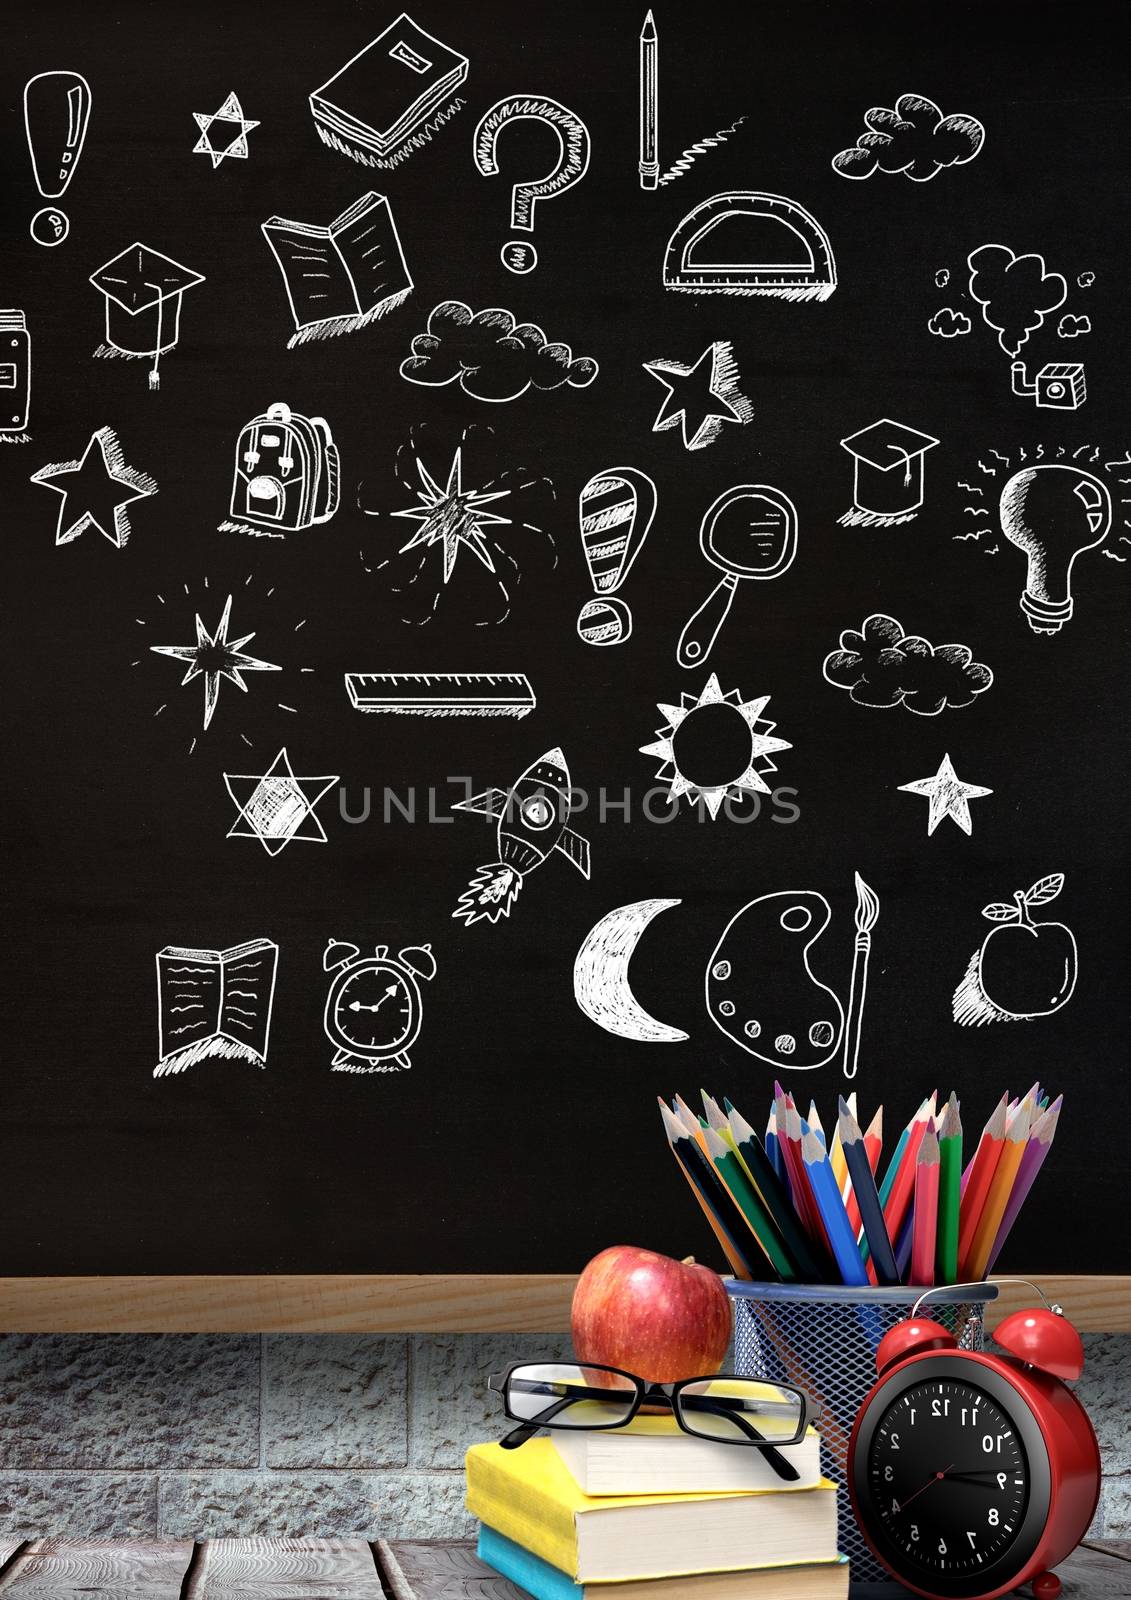 Education drawing on blackboard for school by Wavebreakmedia